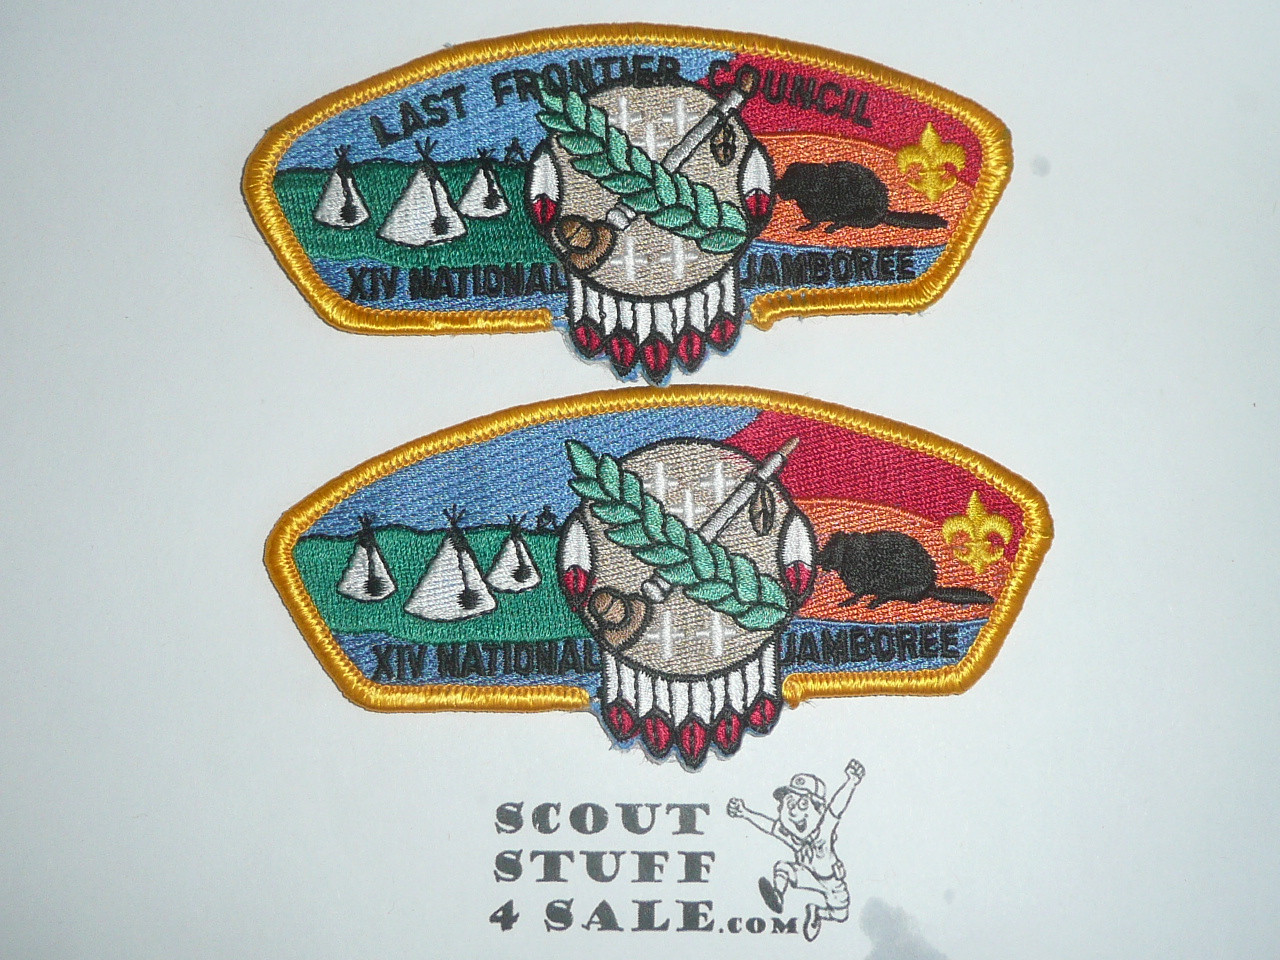 1993 National Jamboree JSP - Last Frontier Council / Black Beaver Council